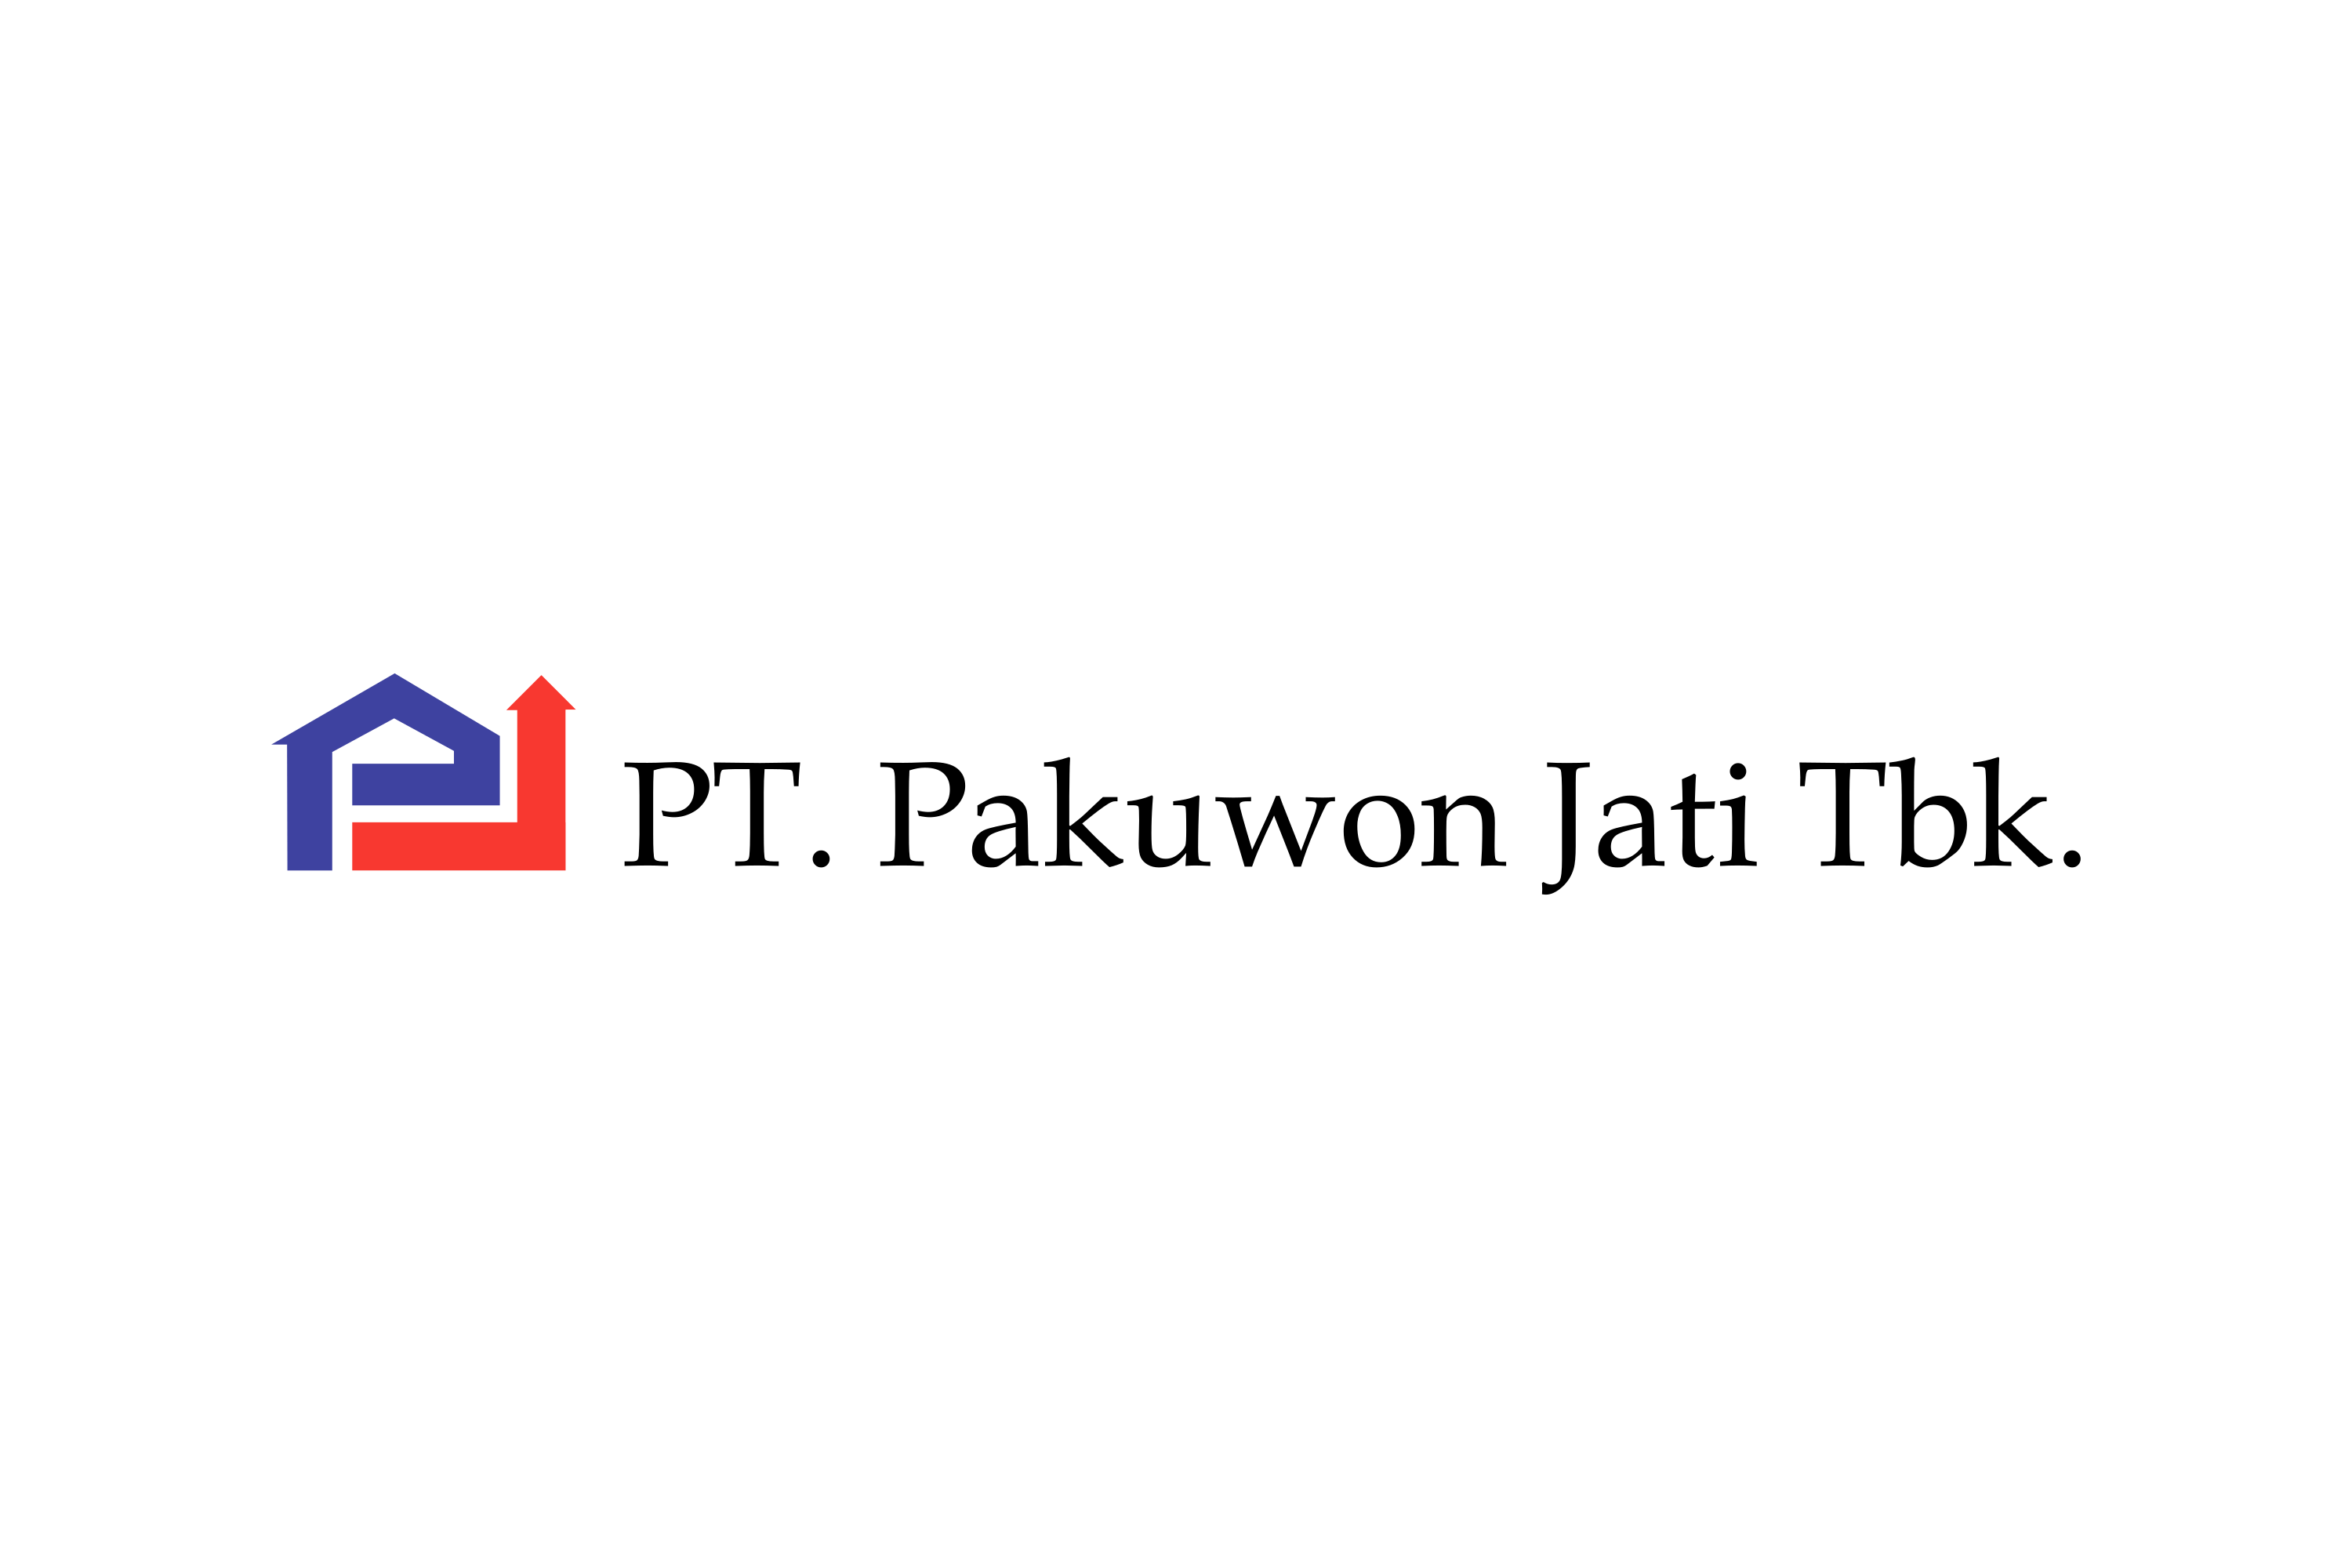 Pakuwon Jati Logo